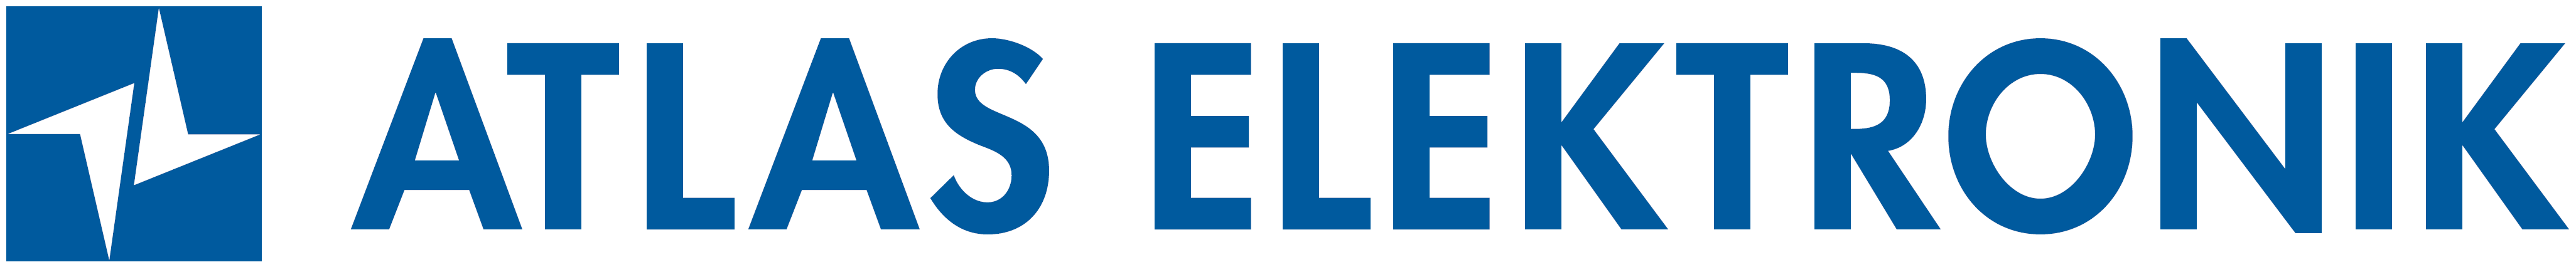 atlas elektronik logo